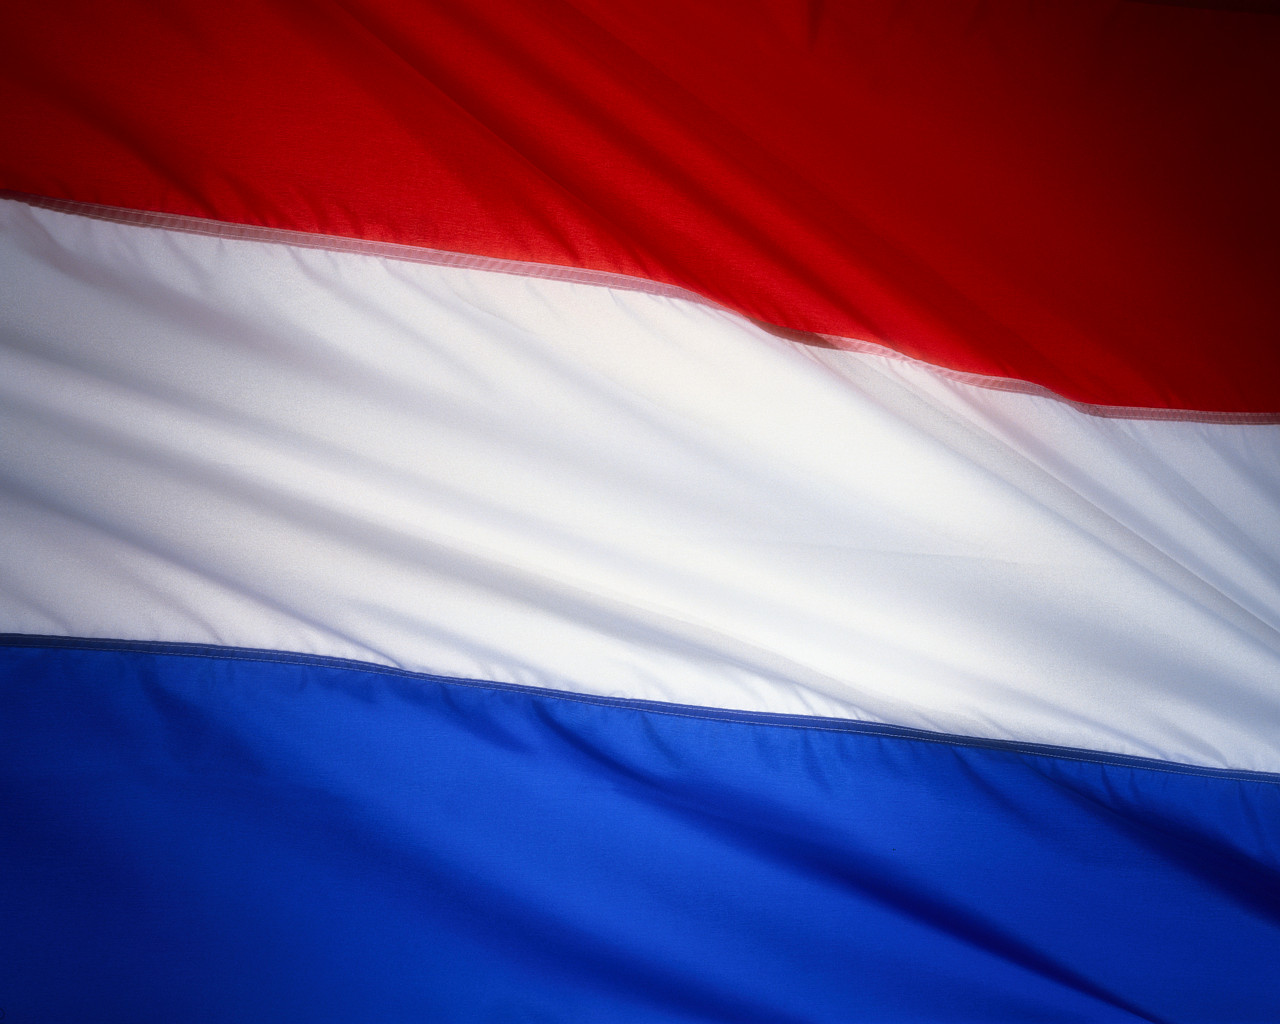 http://4.bp.blogspot.com/-No04nV711iI/Tch2d-X0ejI/AAAAAAAAAyE/HzsMq3f4uH8/s1600/Wallpapers+Flag+of+Netherlands+%25285%2529.jpg